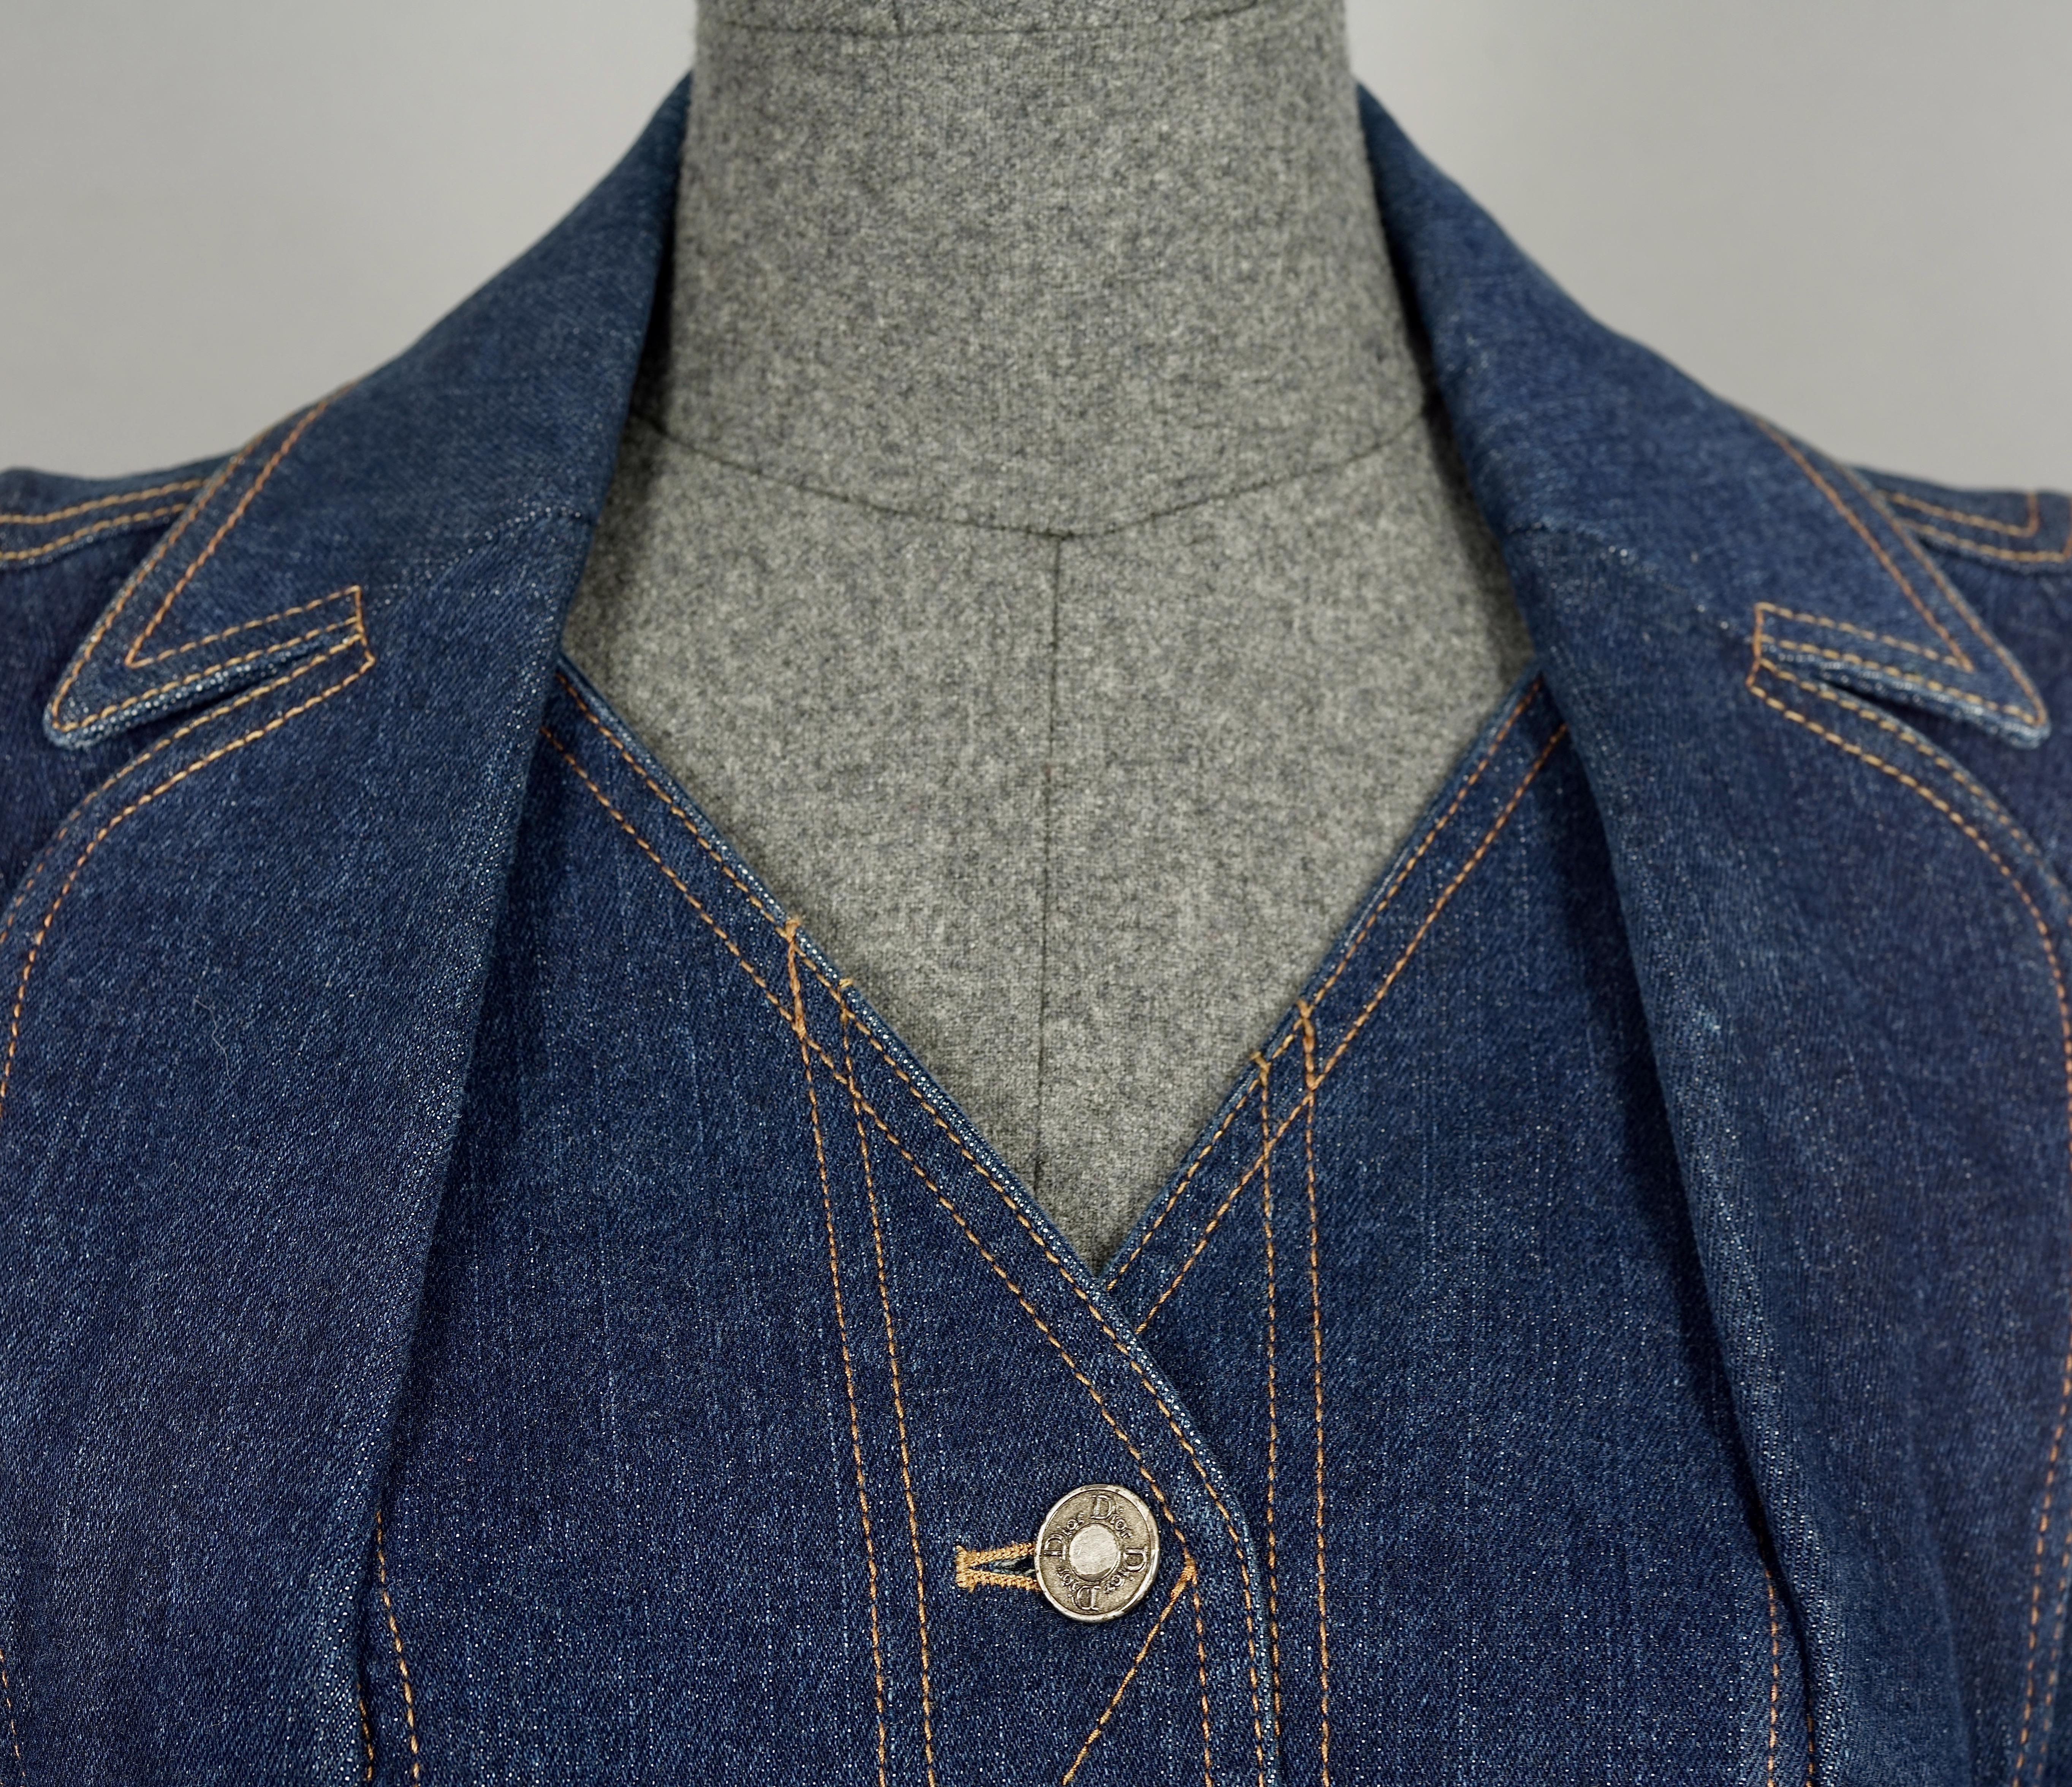 Vintage CHRISTIAN DIOR BOUTIQUE Embroidered Heart Pocket Denim Jacket 1